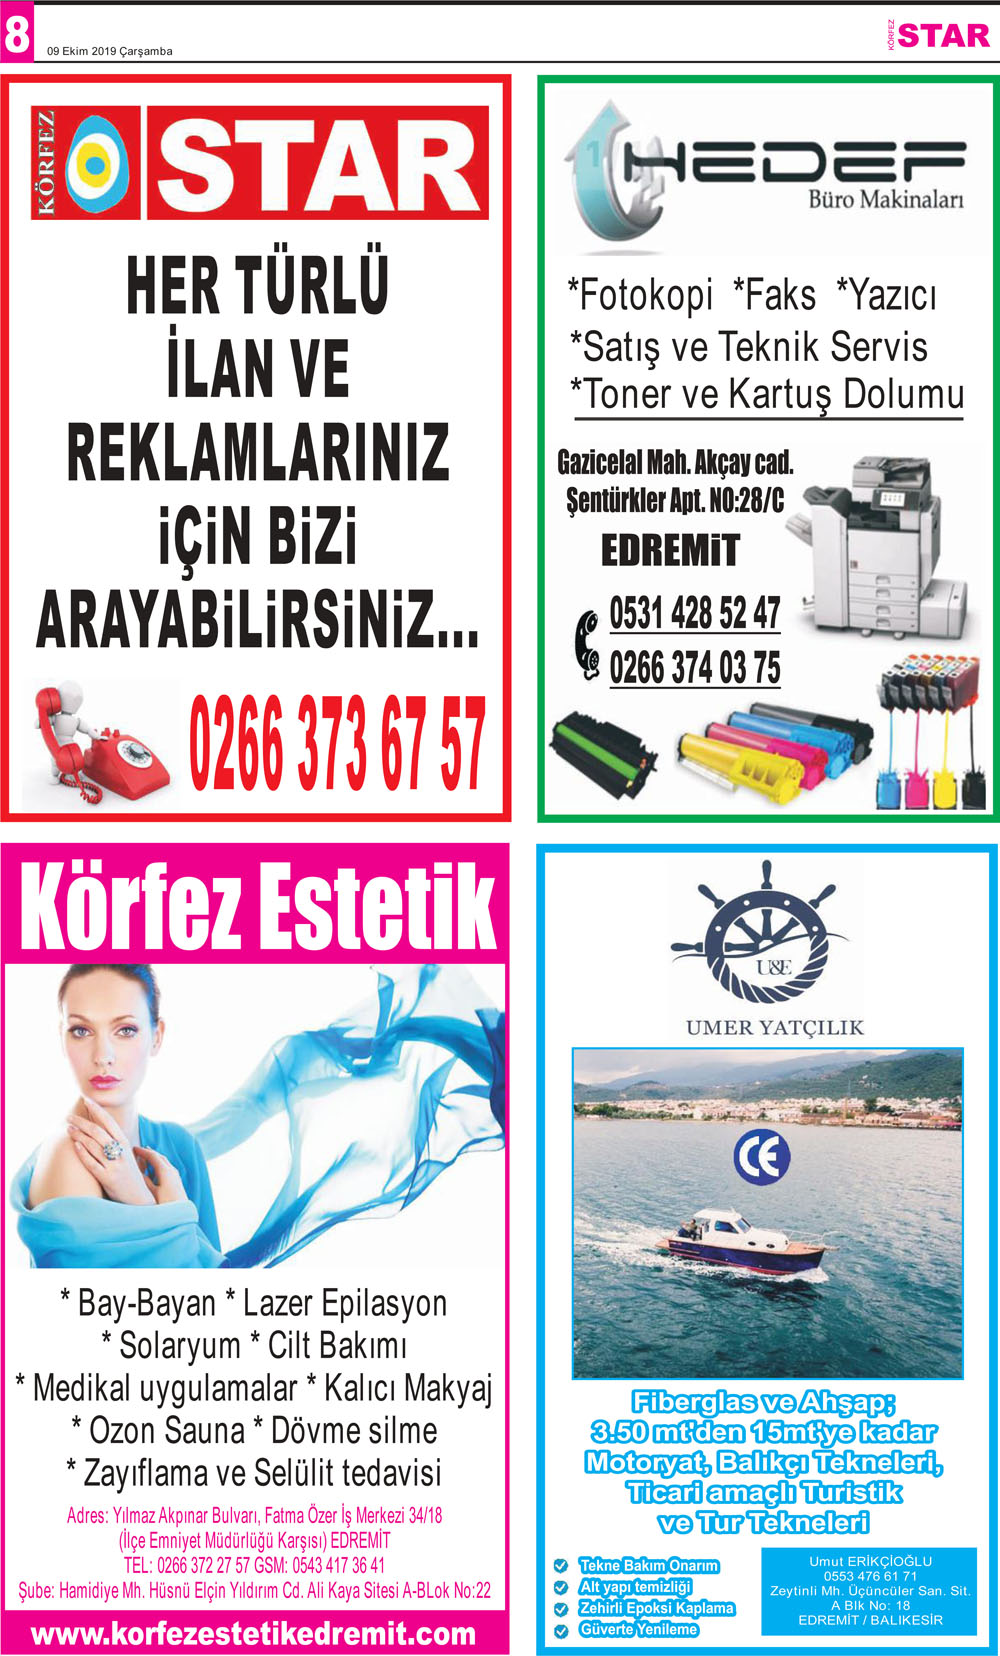 09102019-tarihli-gazetemiz-6619-10-08025933.jpg